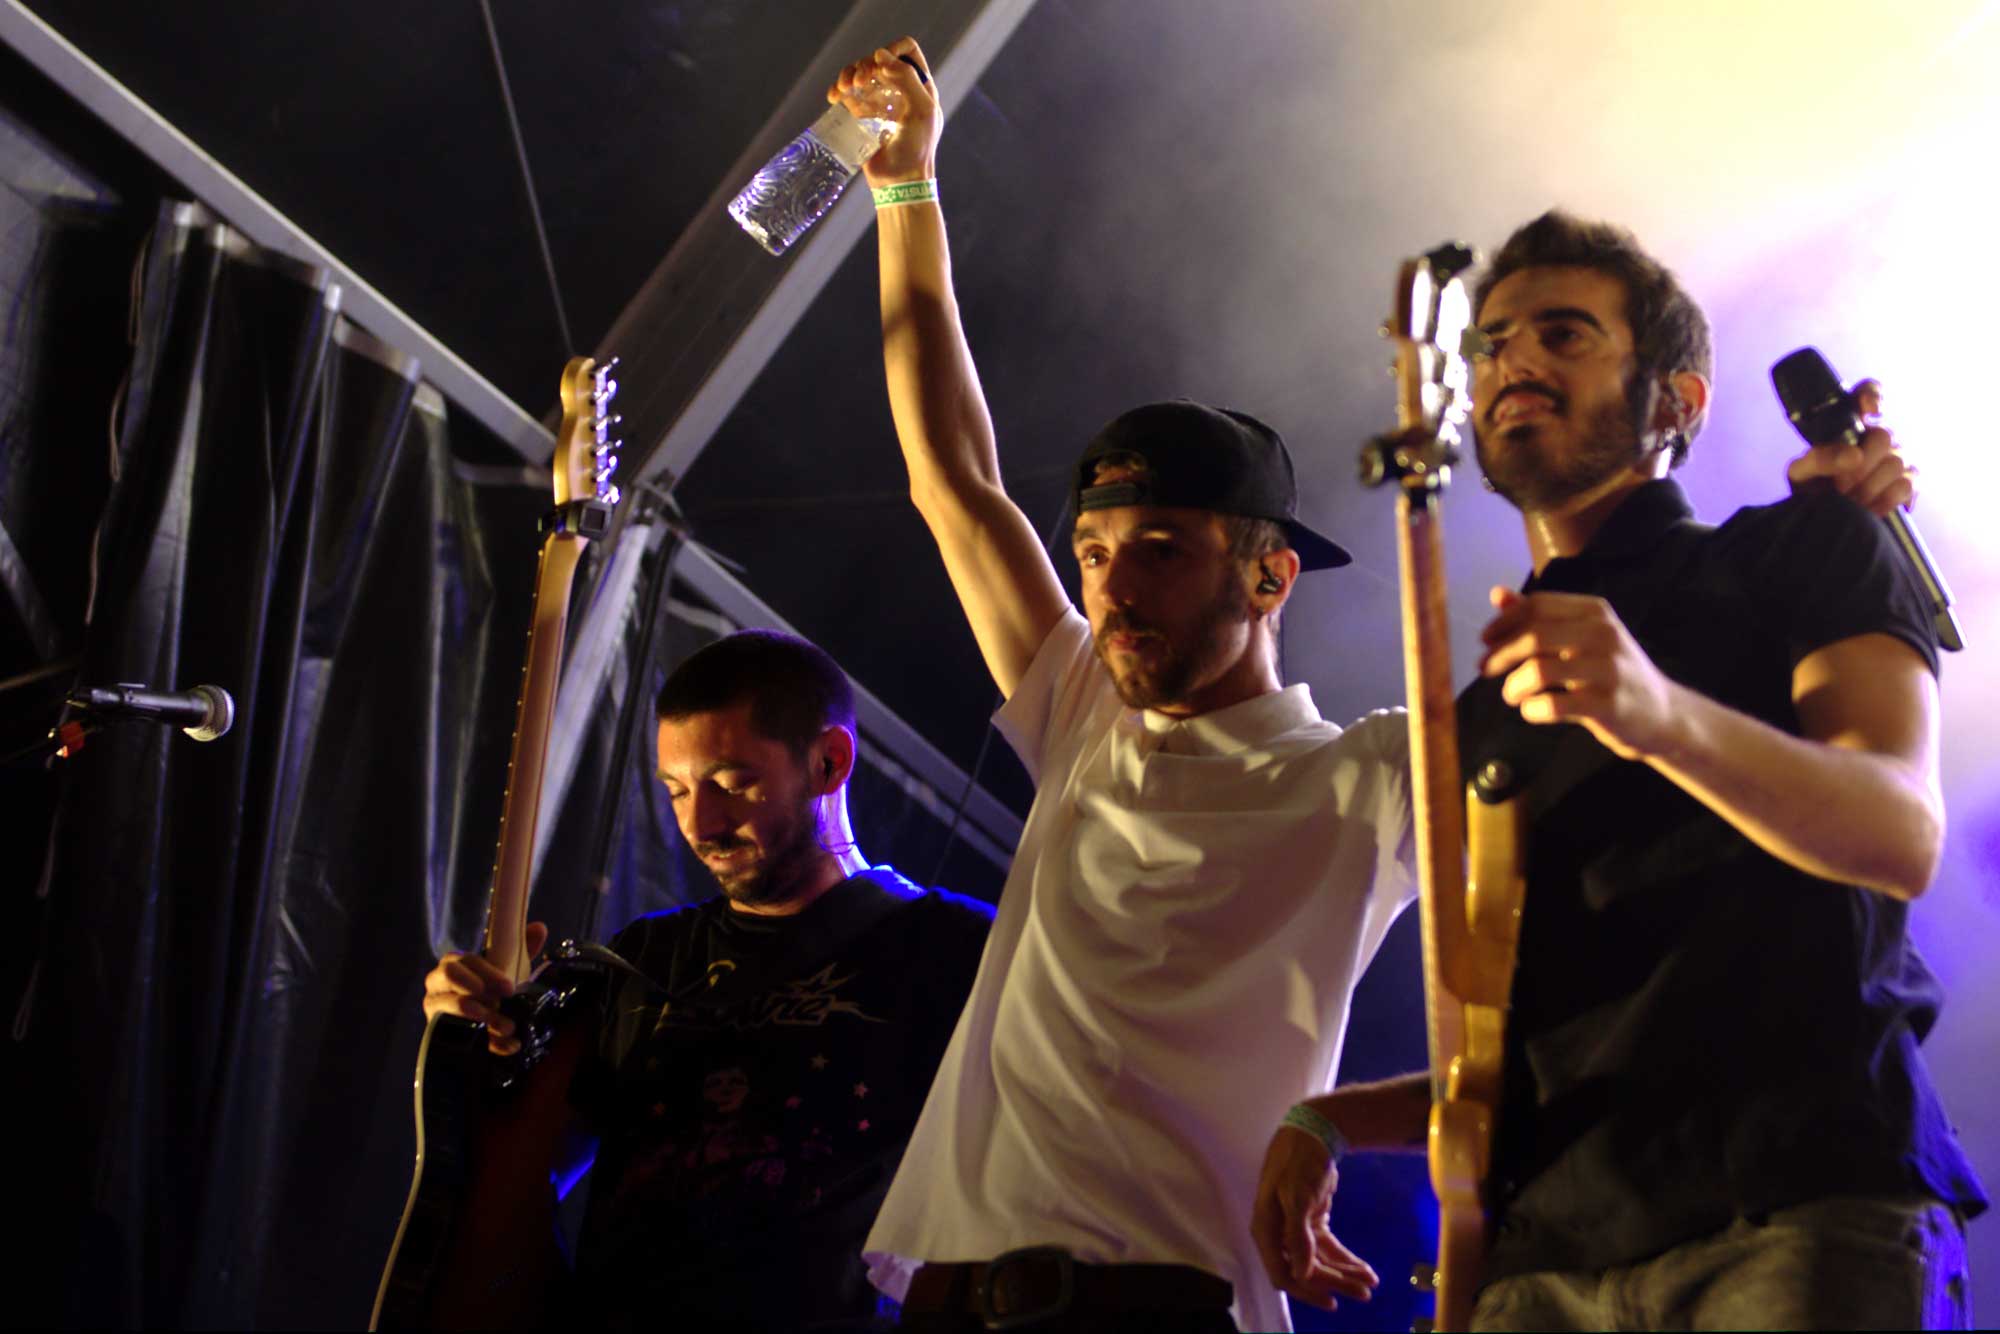 El multitudinari grup La Raíz va oferir un dels concerts més intensos del Canet Rock 2016. Els valencians van actuar ben entrada la nit, a les 3 de la matinada.